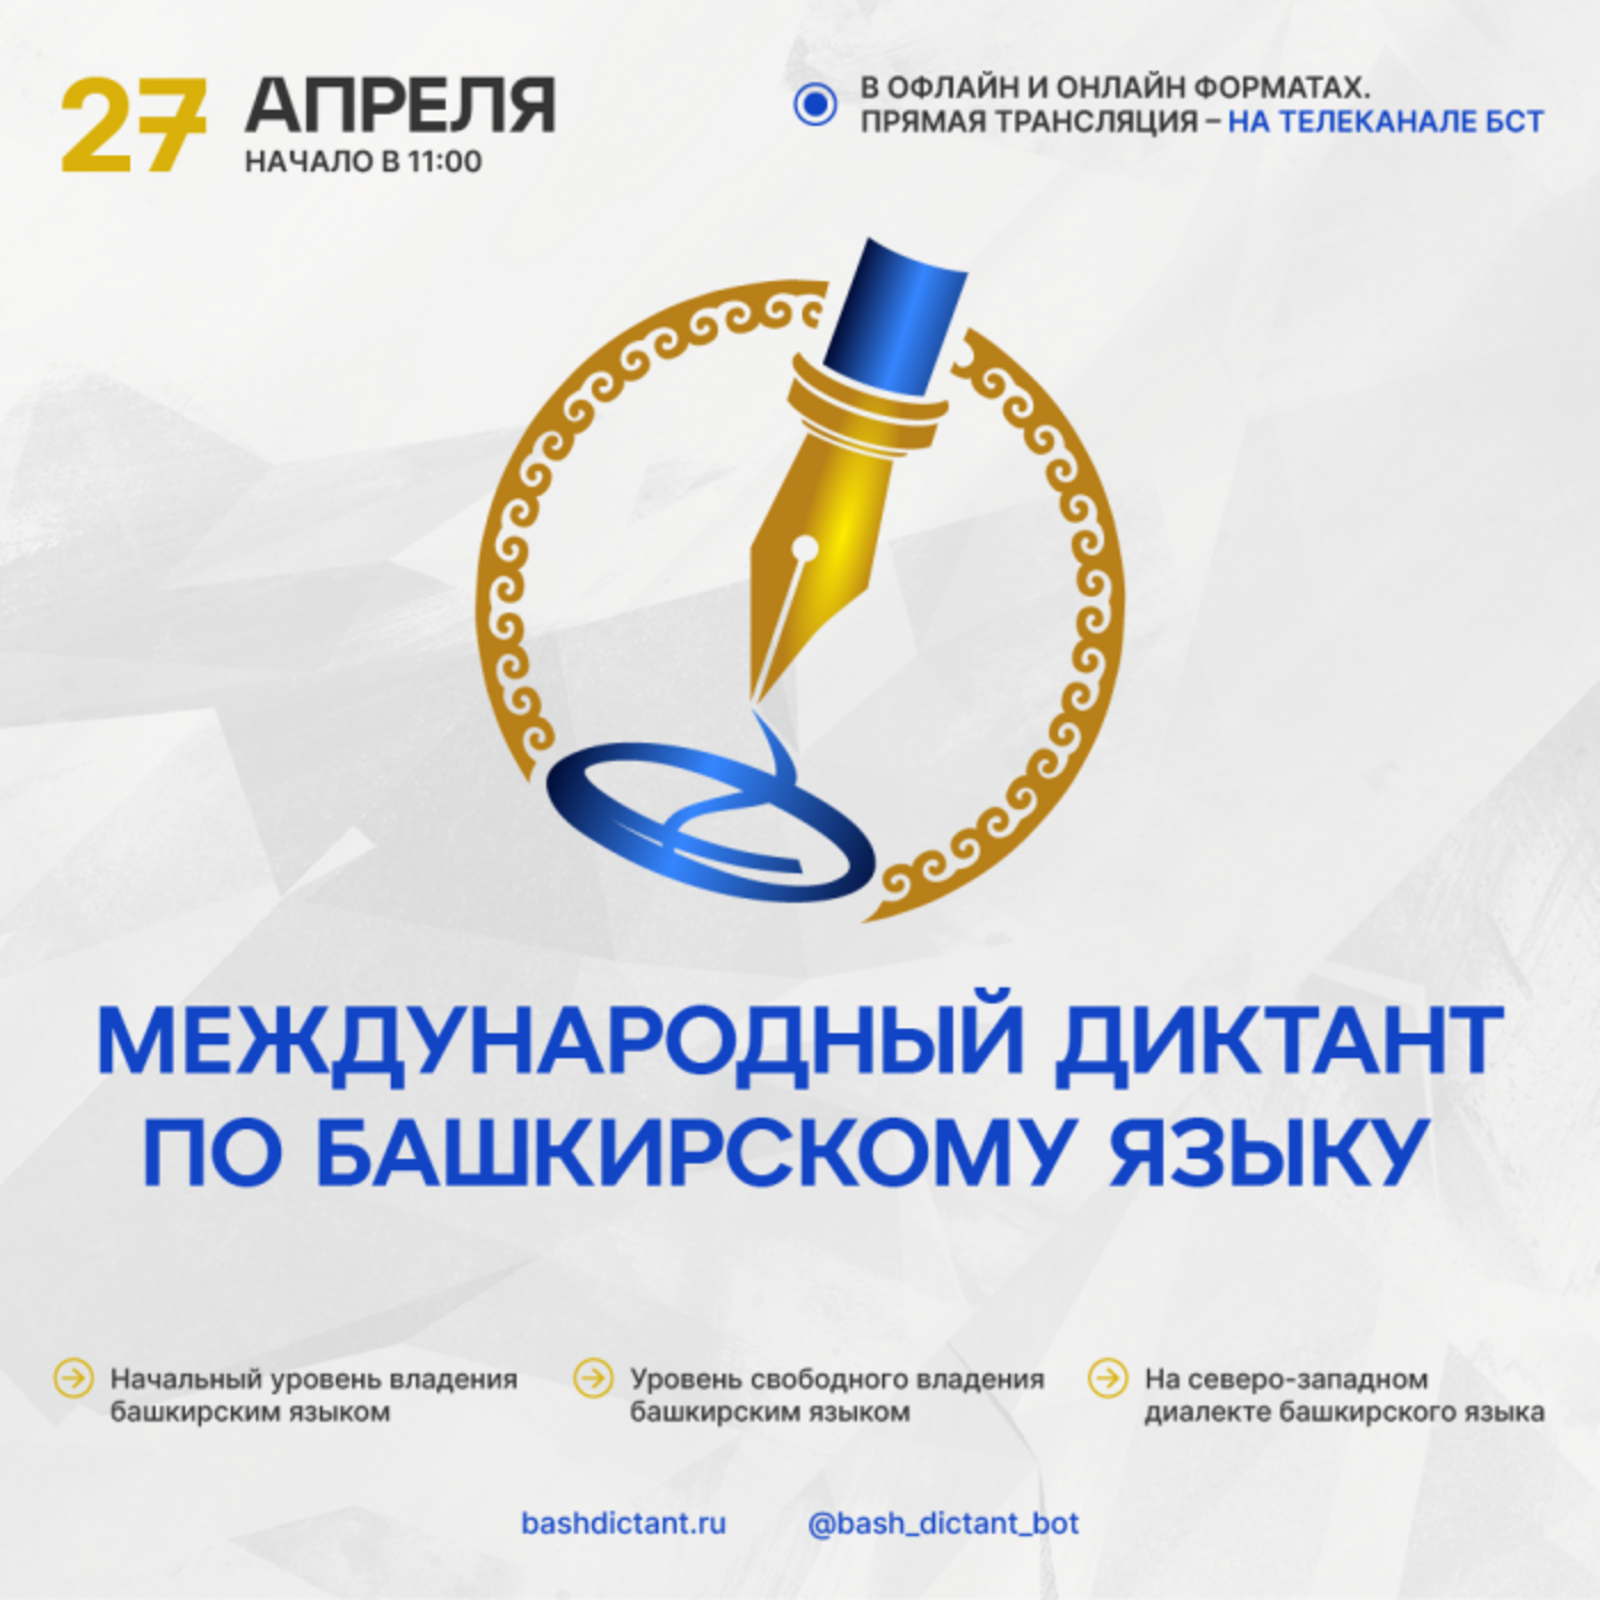 С 27 по 29 апреля состоится Международный диктант по башкирскому языку